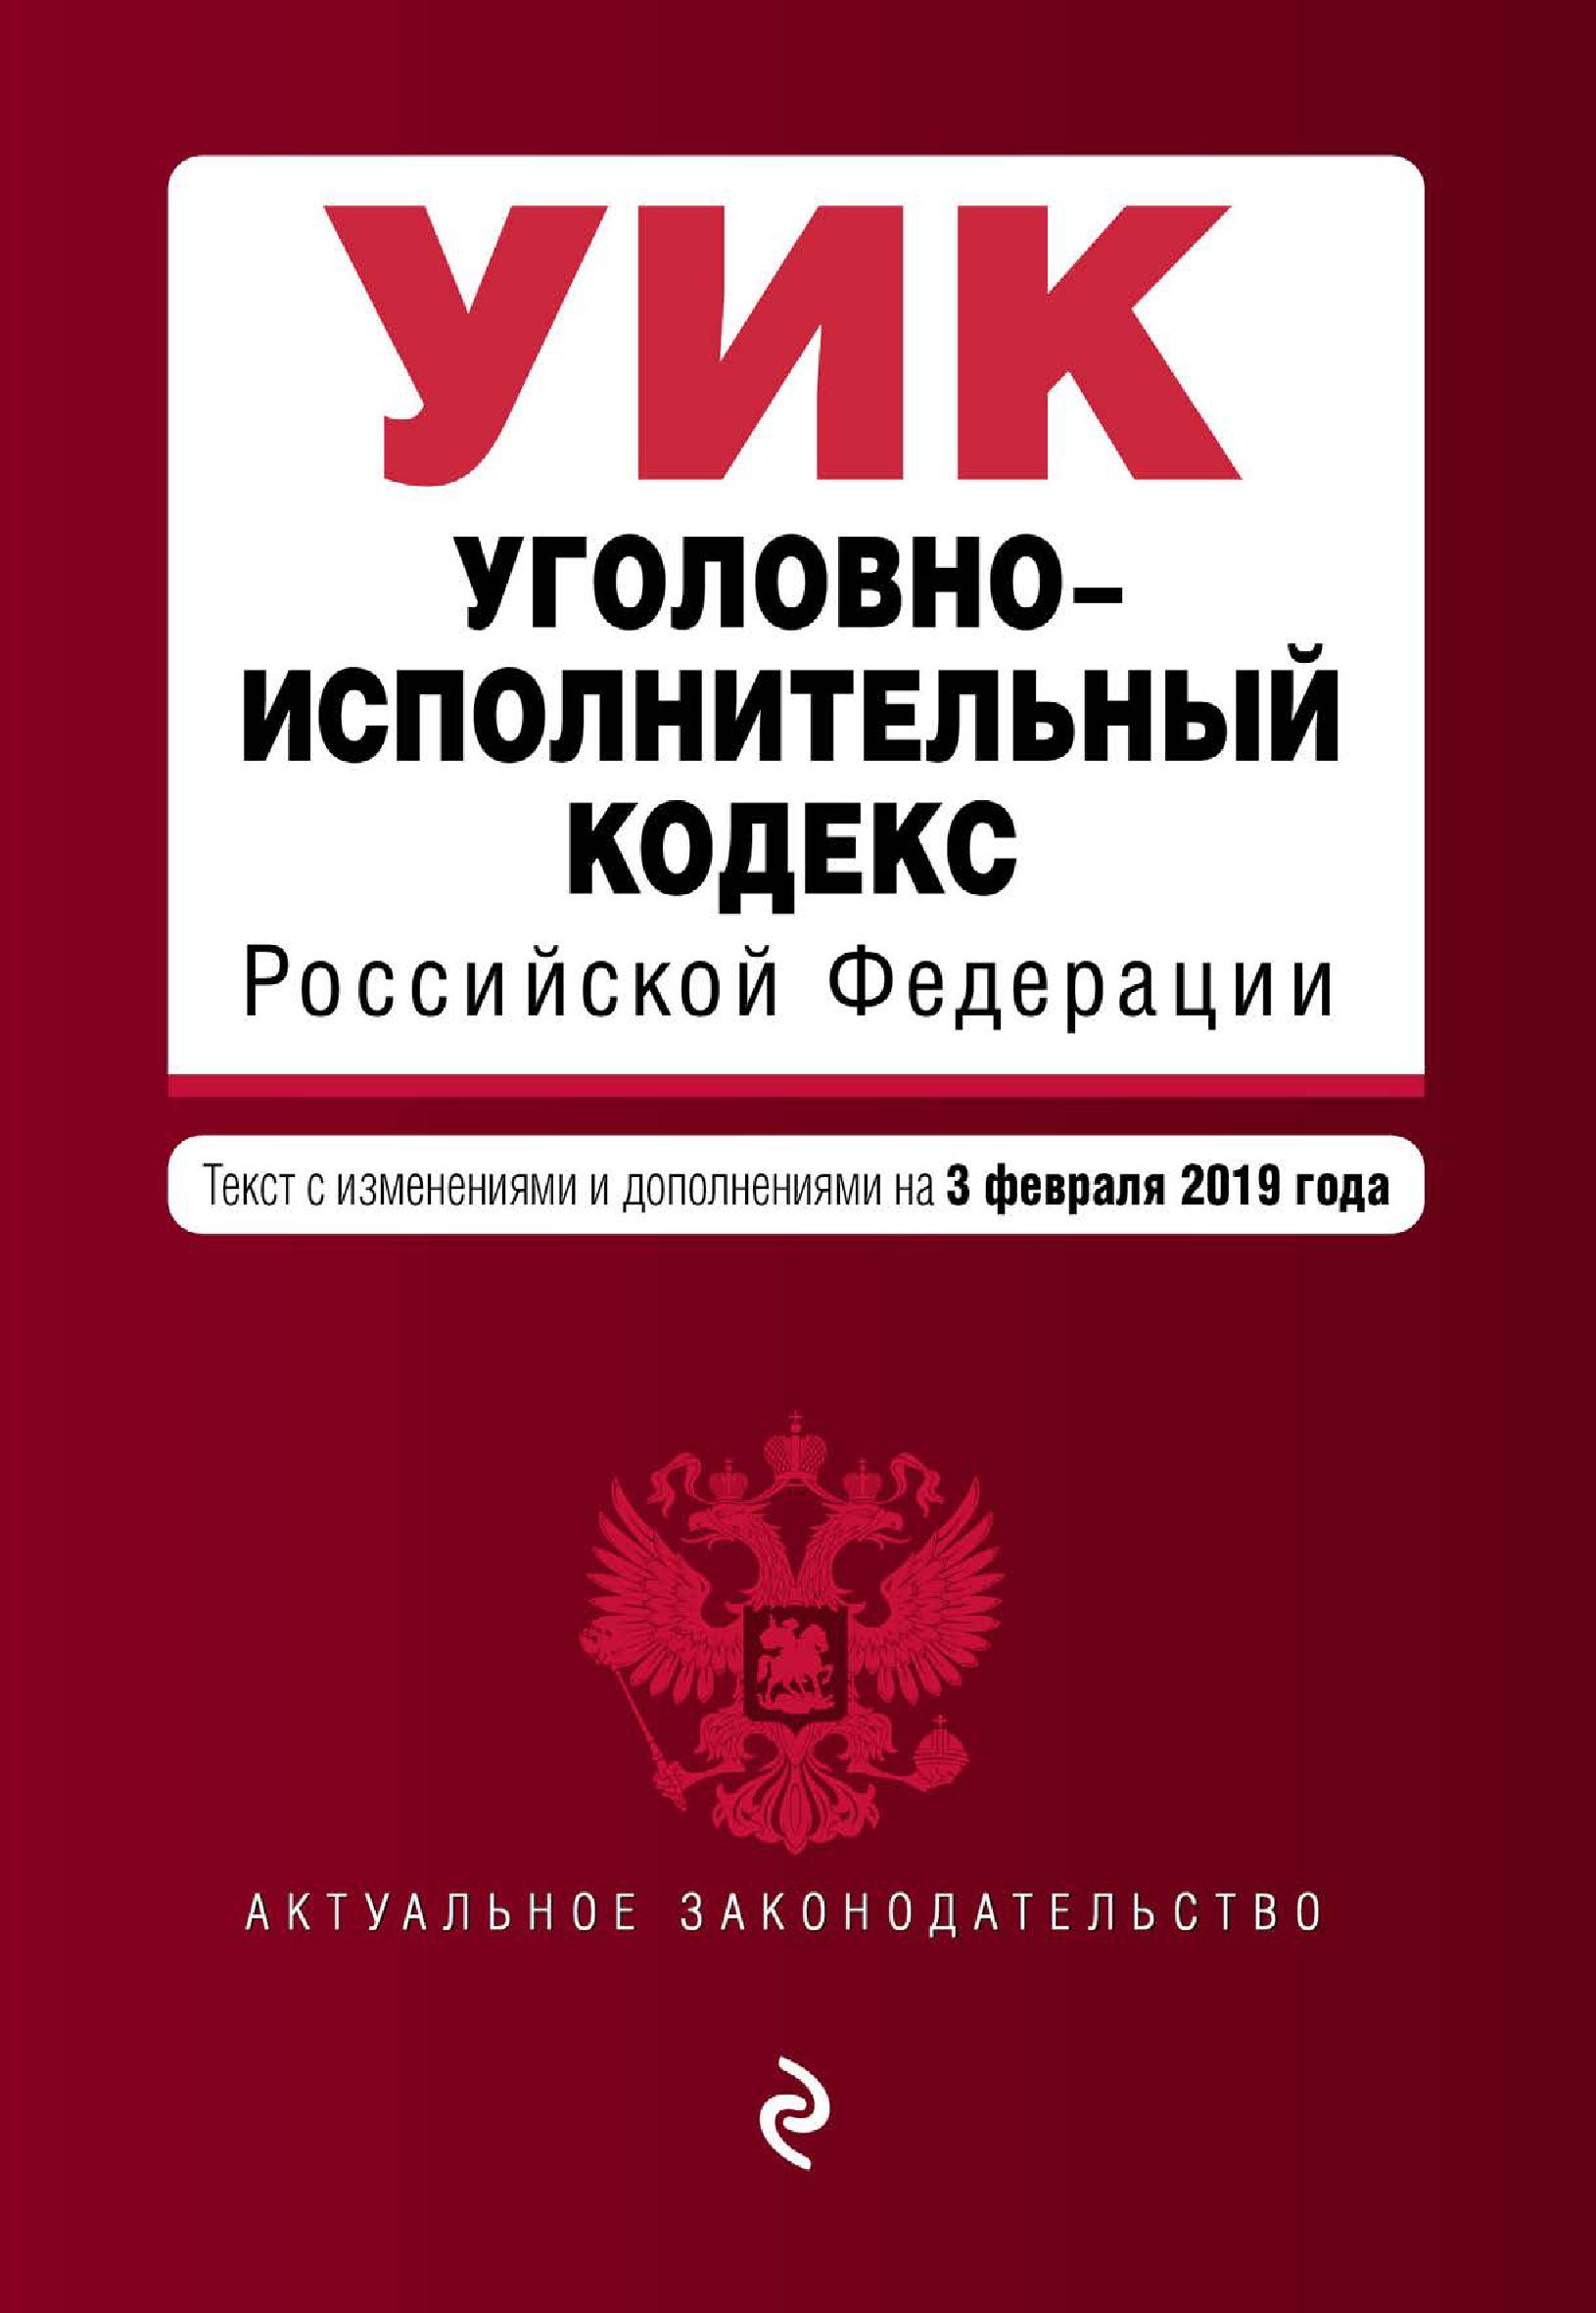 Уголовно-исполнительный кодекс Российской Федерации. Текст с изменениями и дополнениями на 3 февраля 2019 года